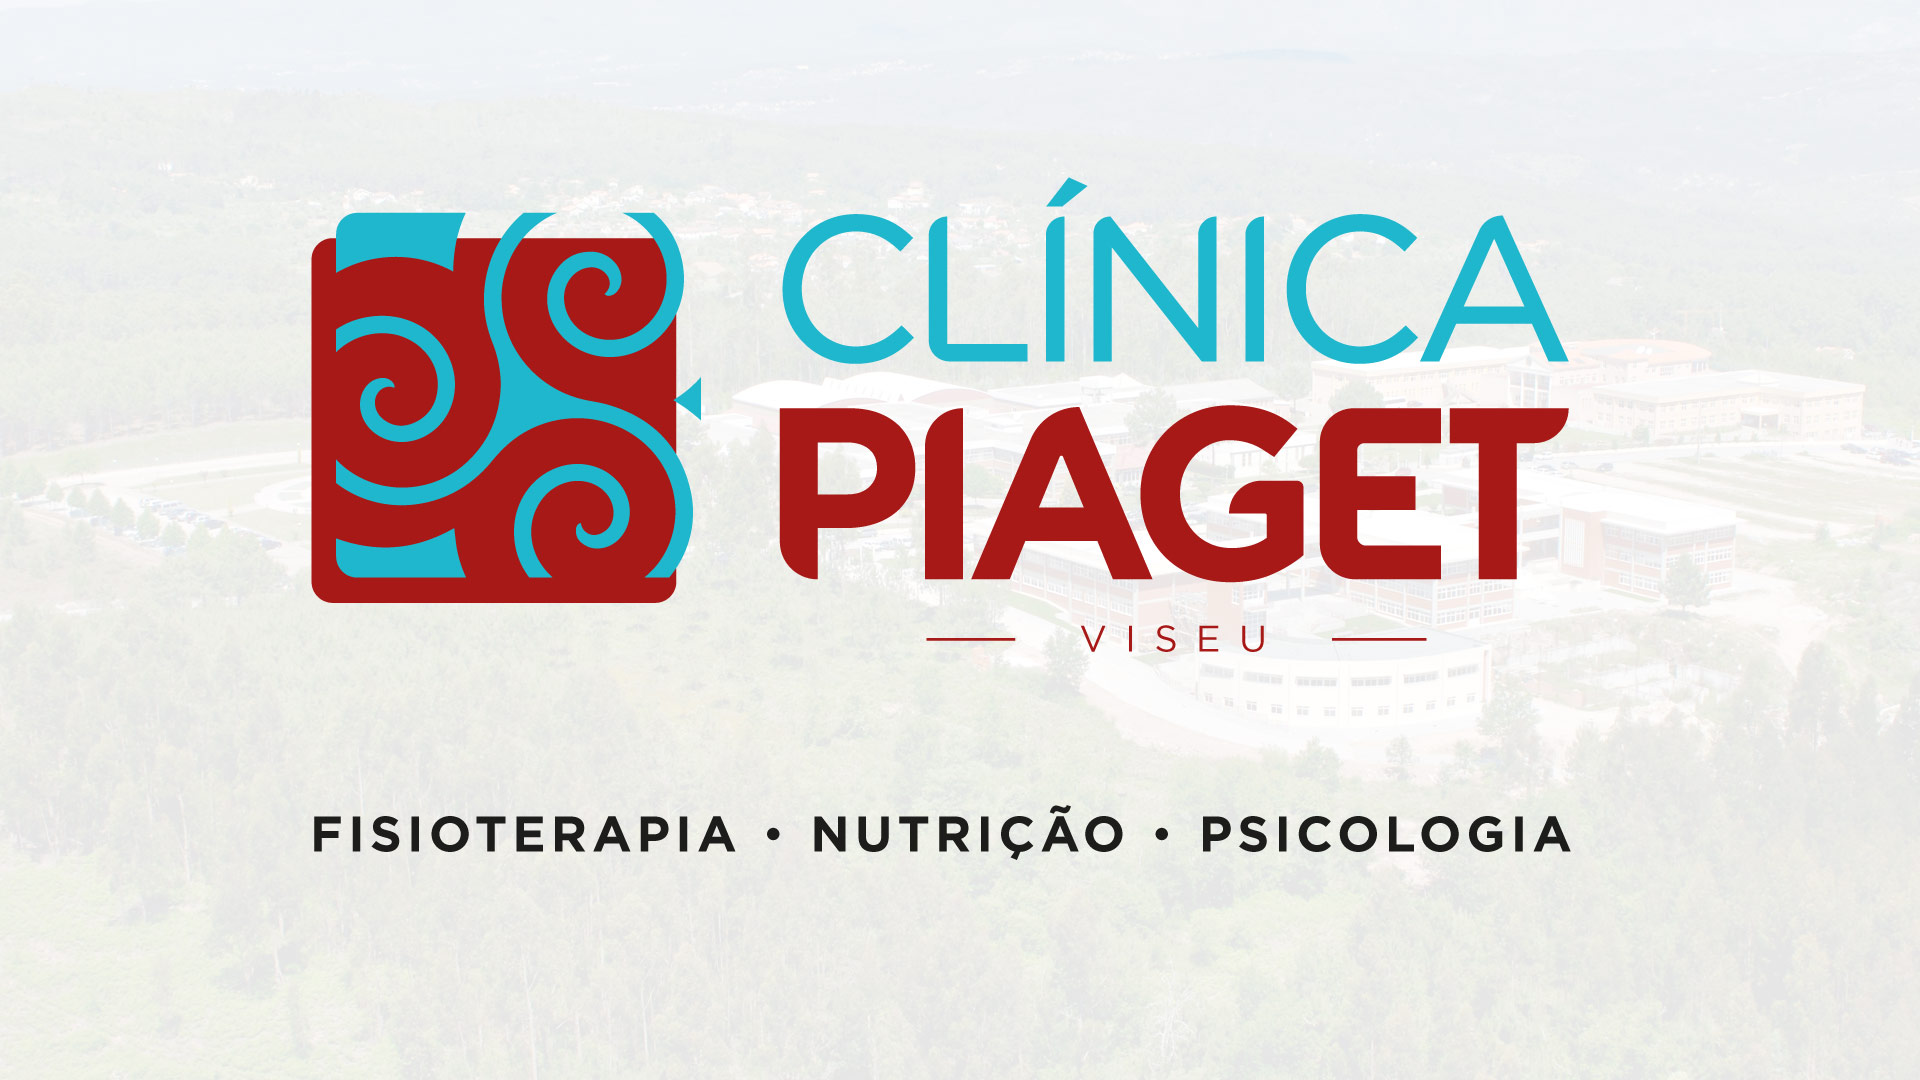 Clínica Piaget abre em Viseu